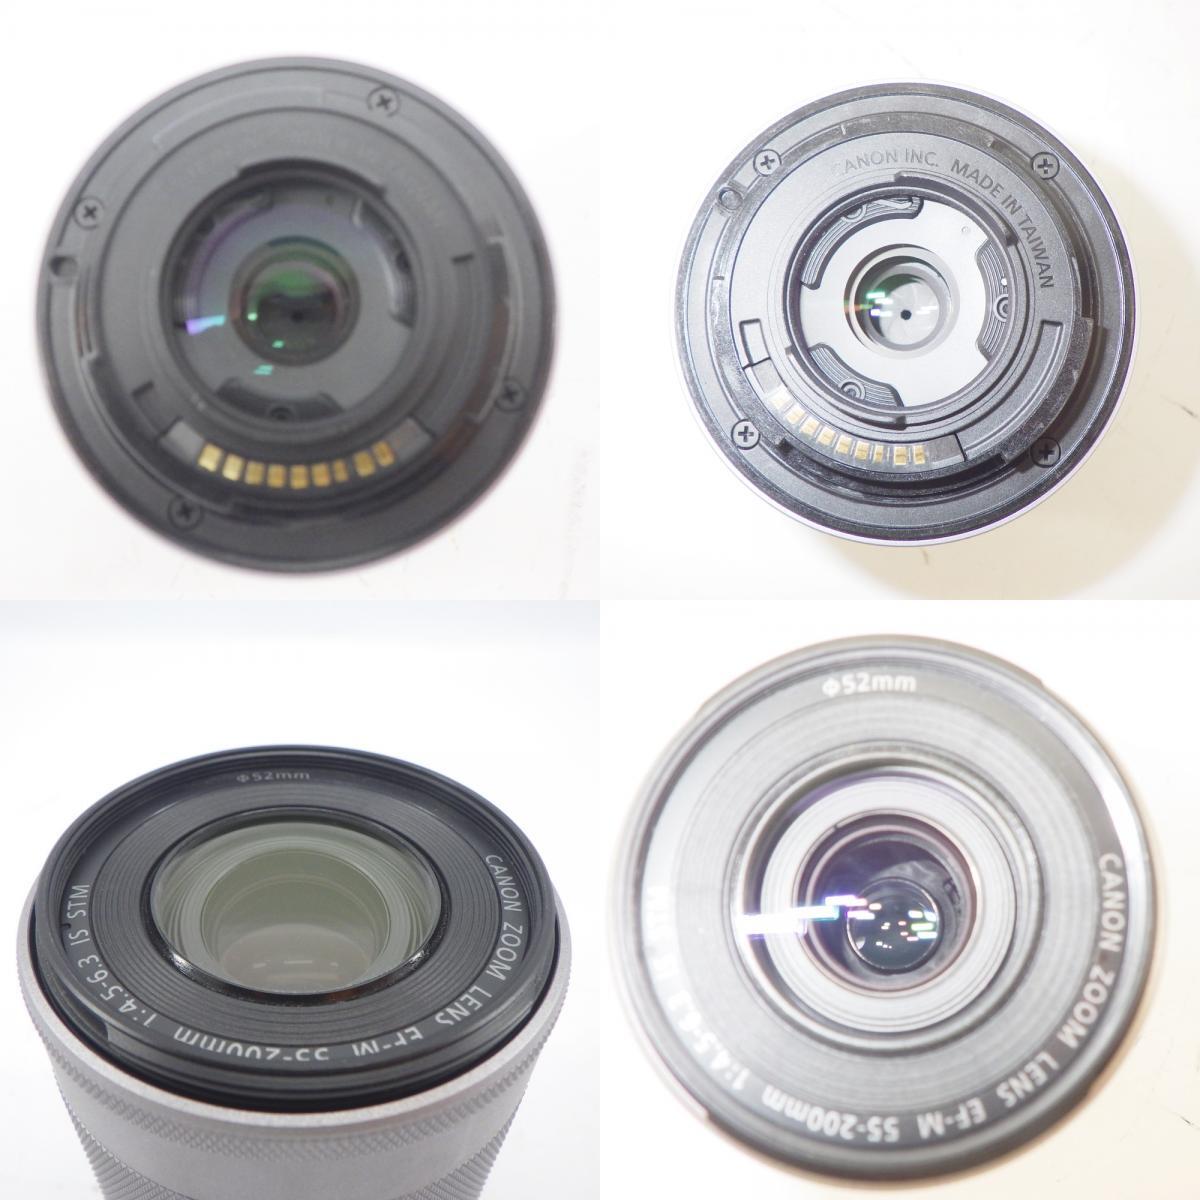 1 иен ~ Canon Canon Canon EOS Kiss M2 двойной zoom комплект * рабочее состояние подтверждено текущее состояние товар с коробкой камера 52-2637184[O товар ]